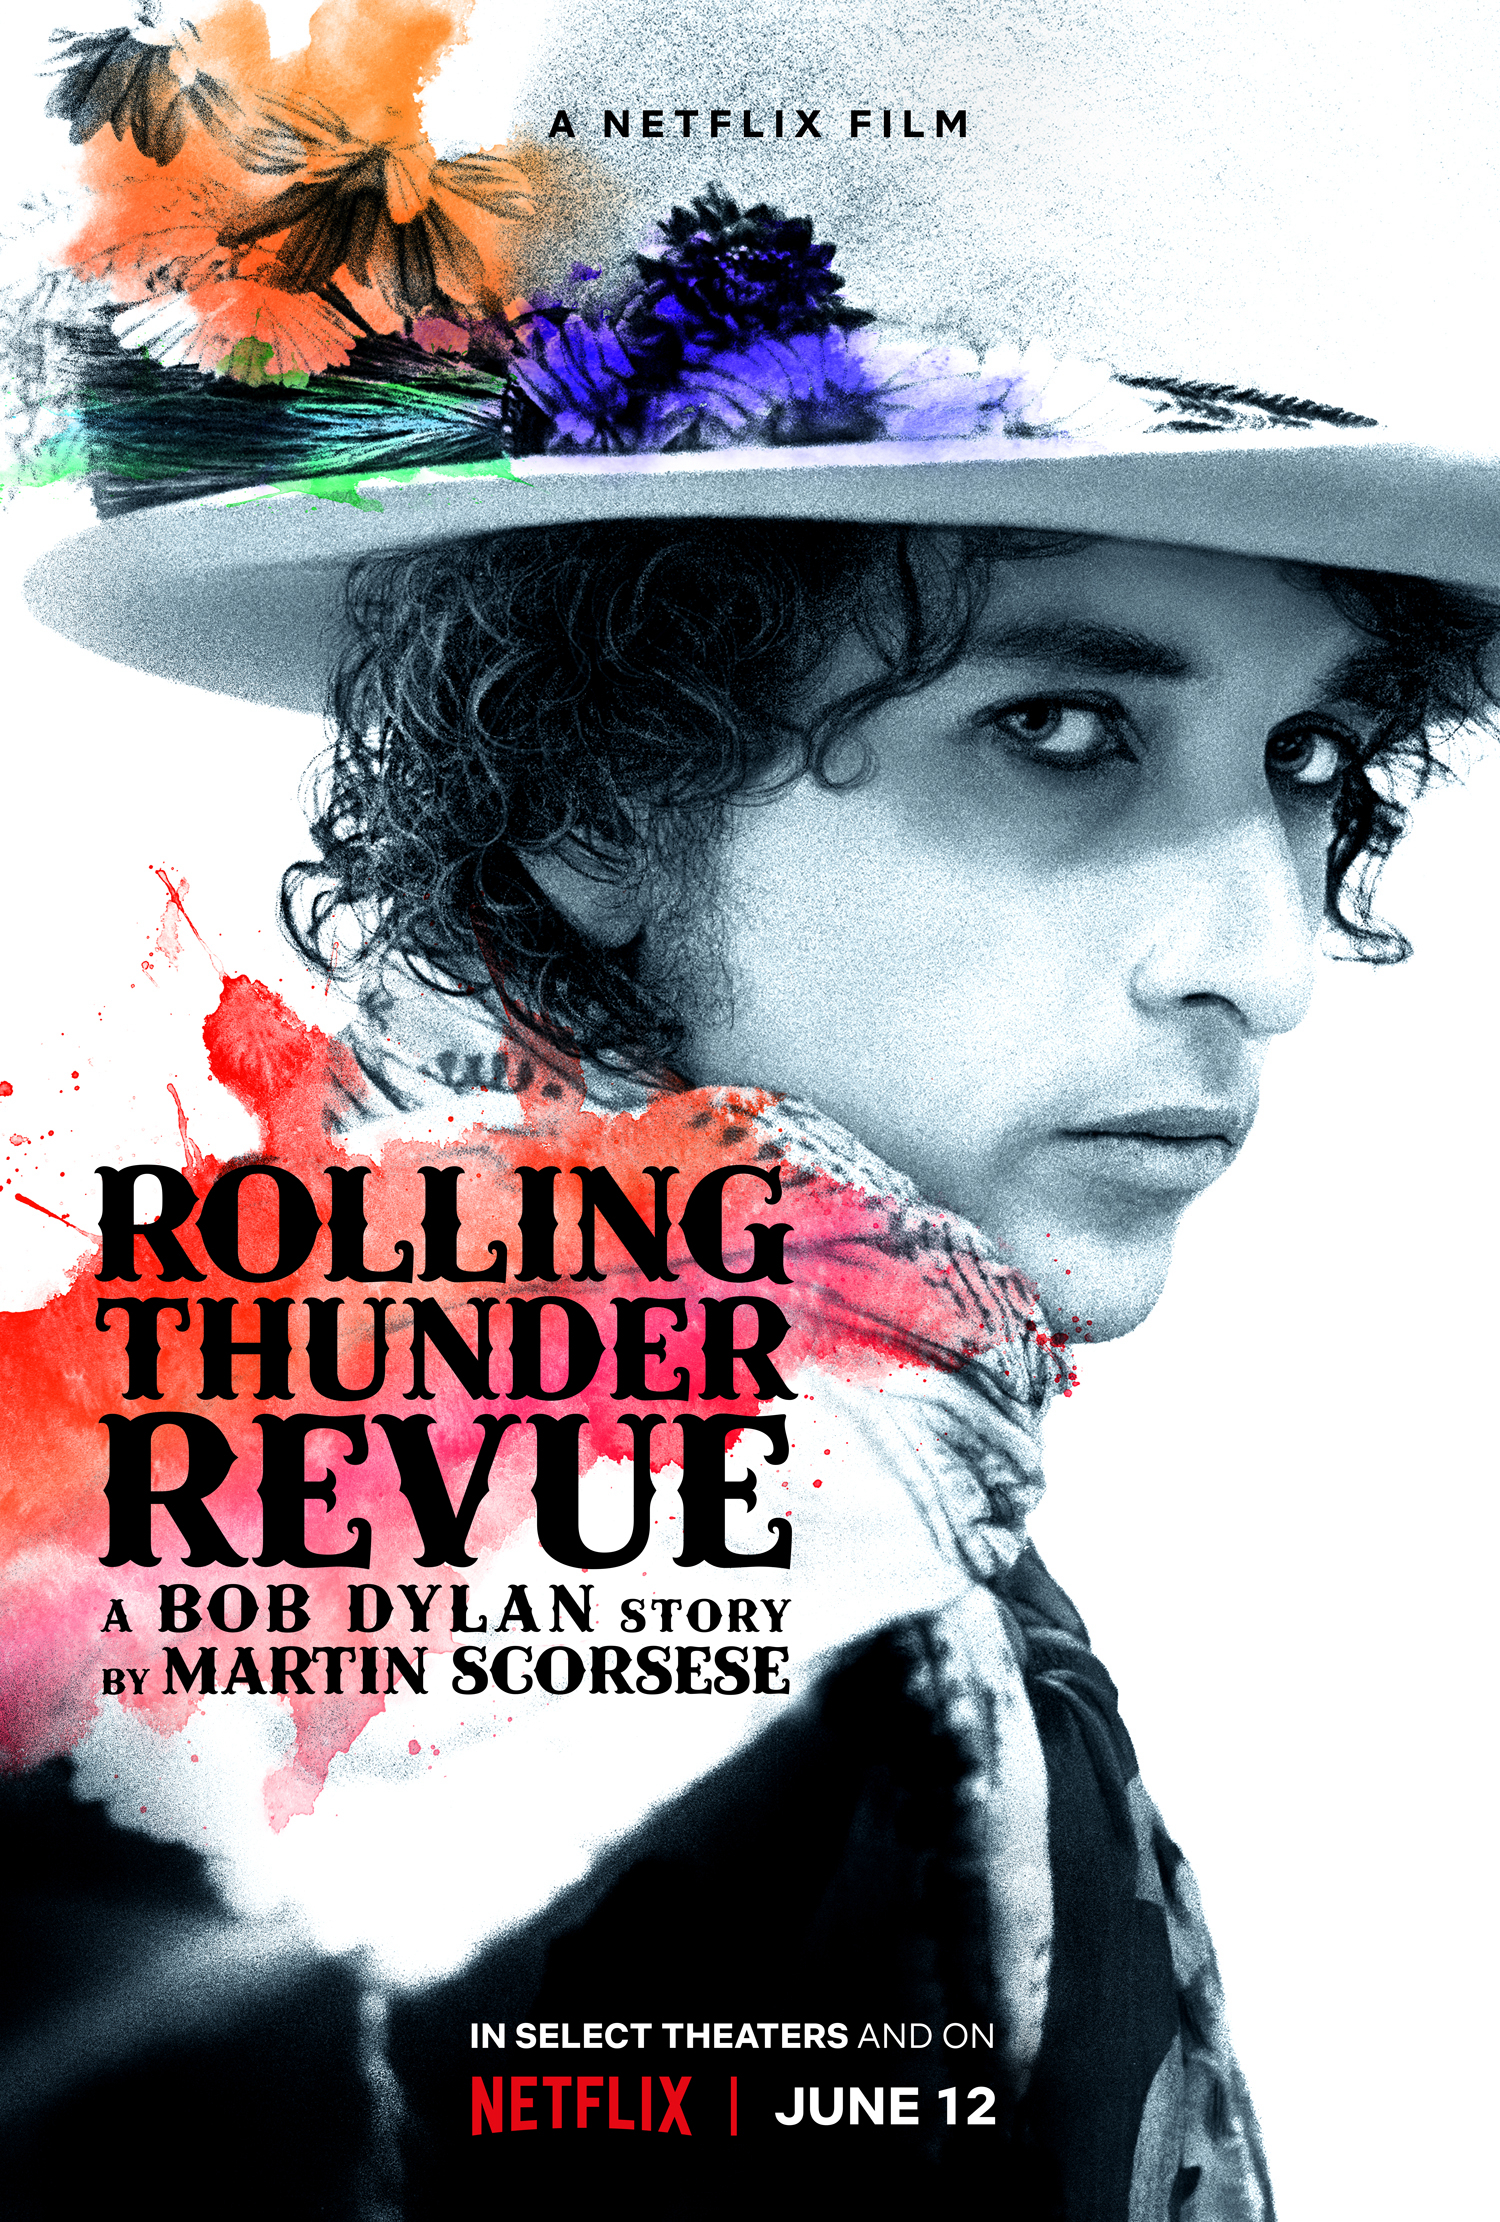 Xem Phim Rolling Thunder Revue: Câu chuyện của Bob Dylan kể bởi Martin Scorsese (Rolling Thunder Revue: A Bob Dylan Story by Martin Scorsese)